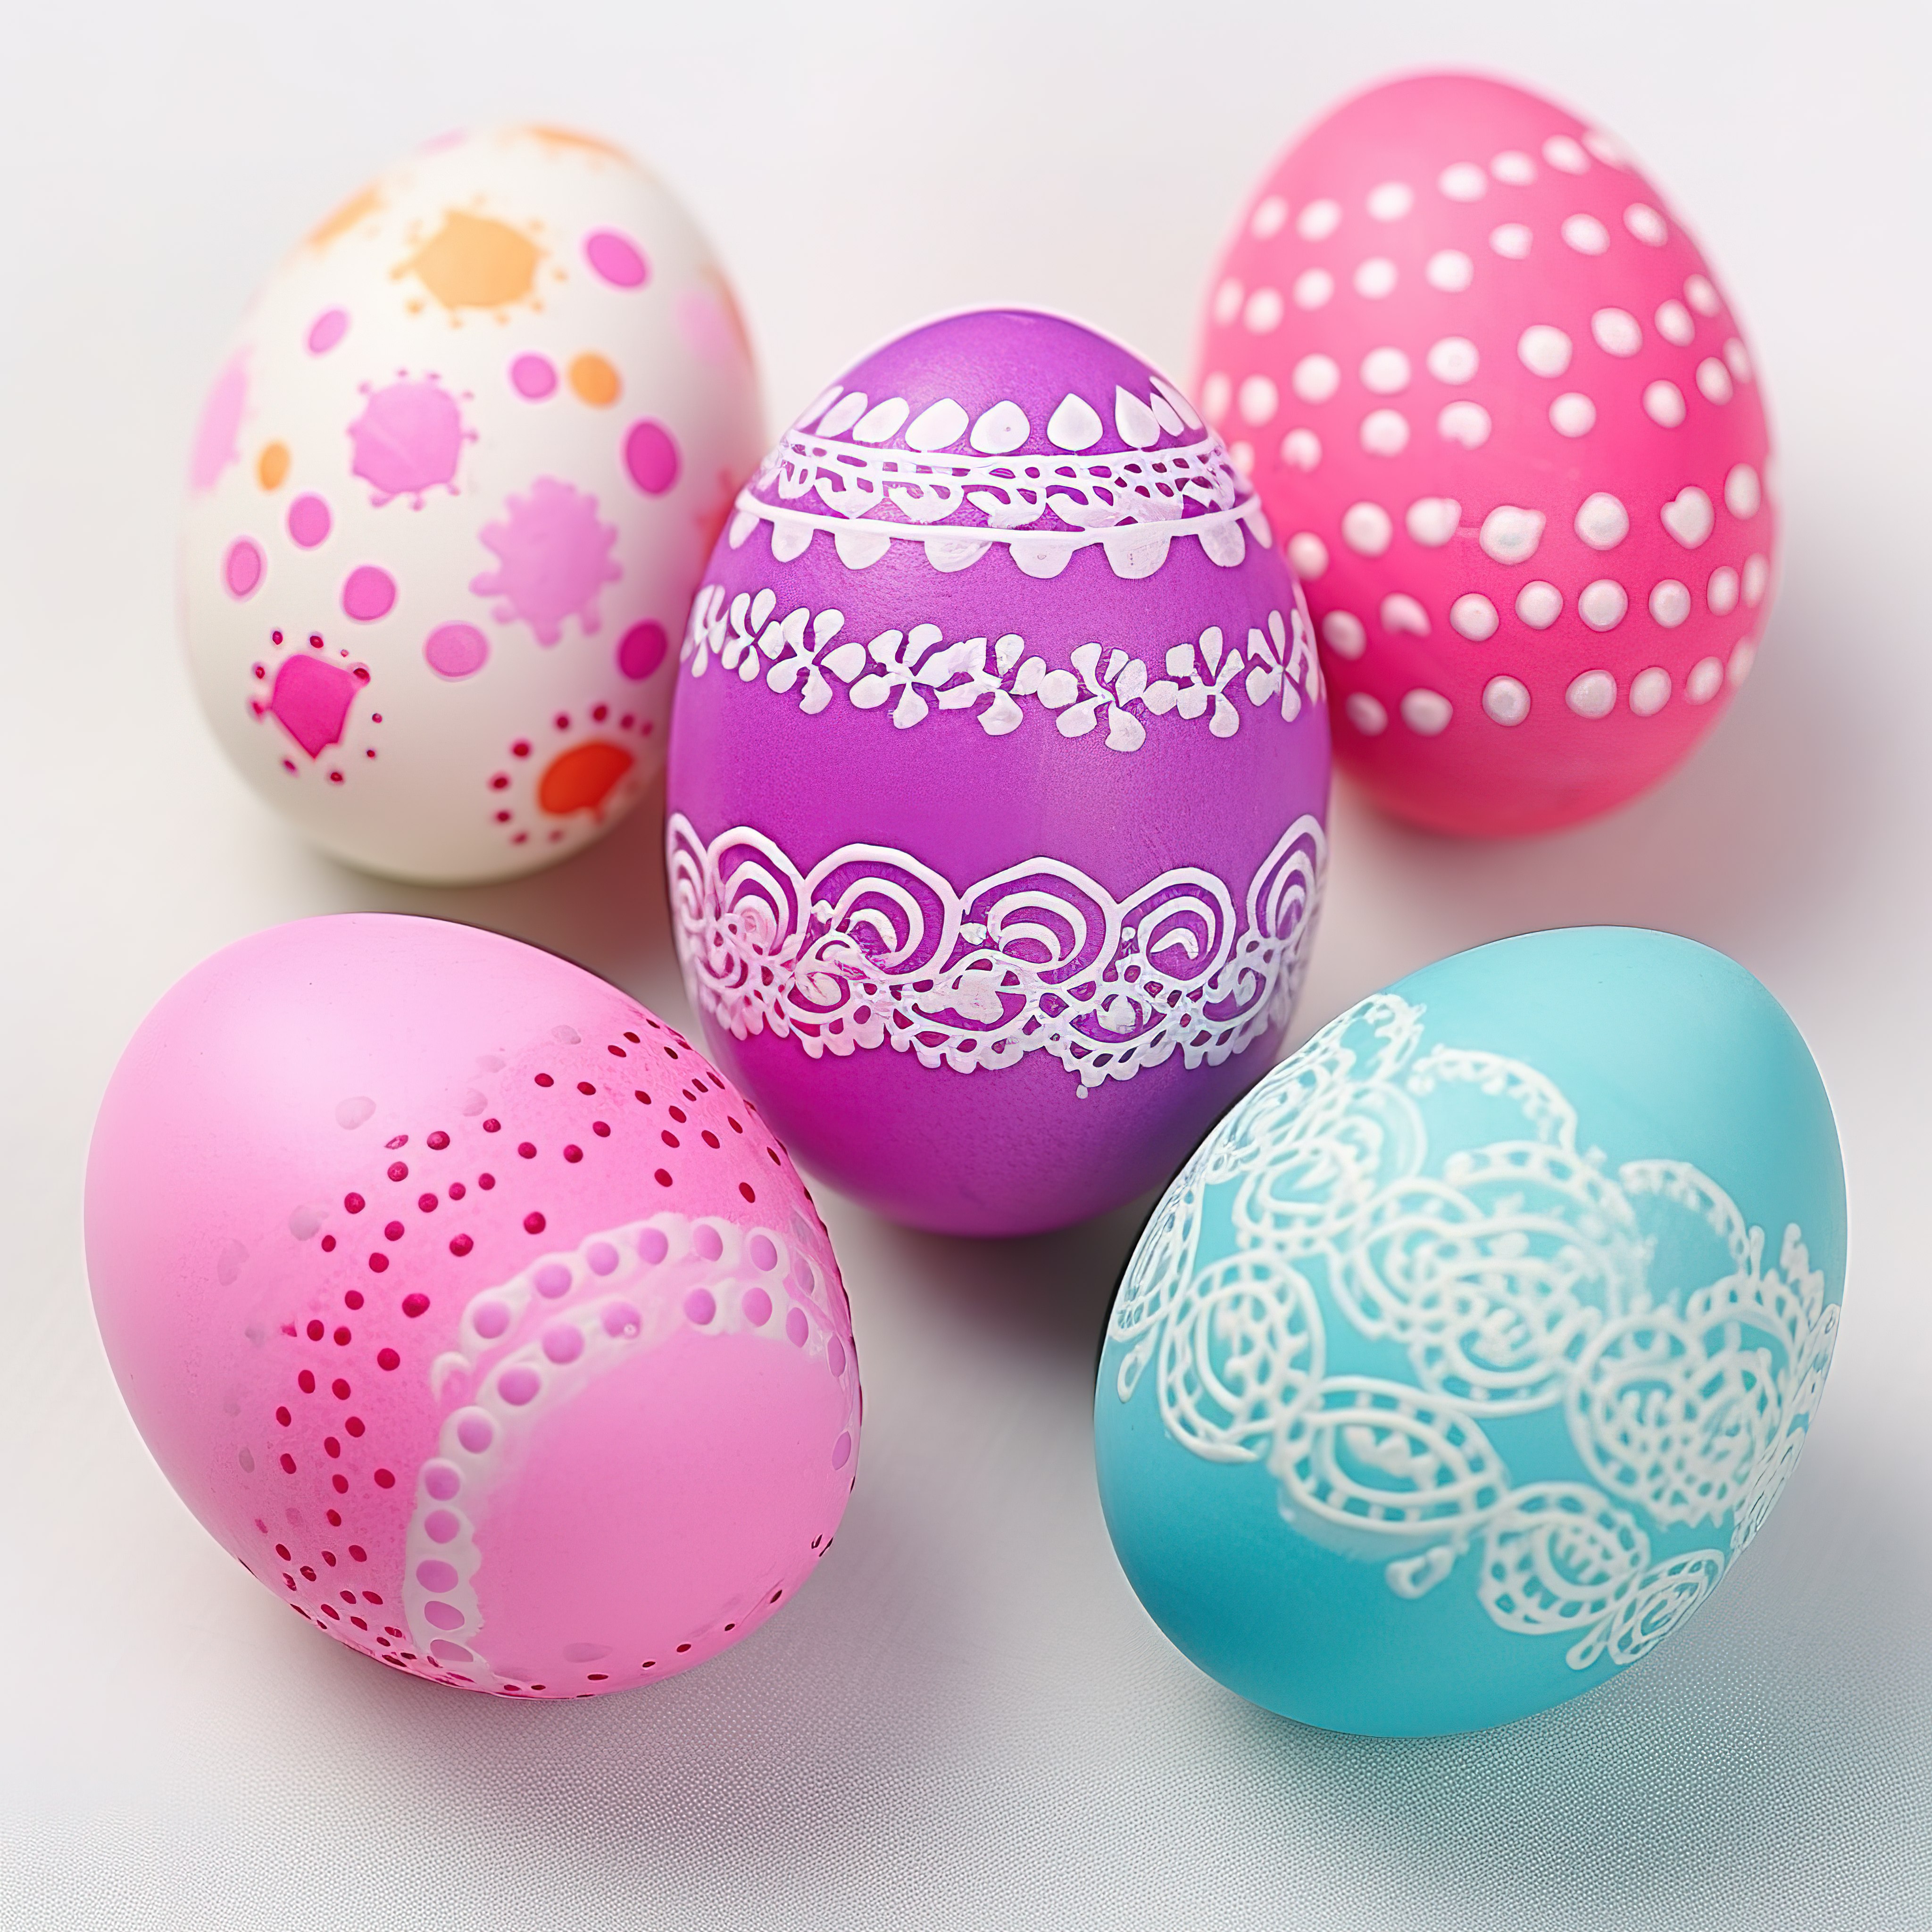 复活节彩蛋教程 12 个简单的复活节彩蛋设计与 DIY 项目图片